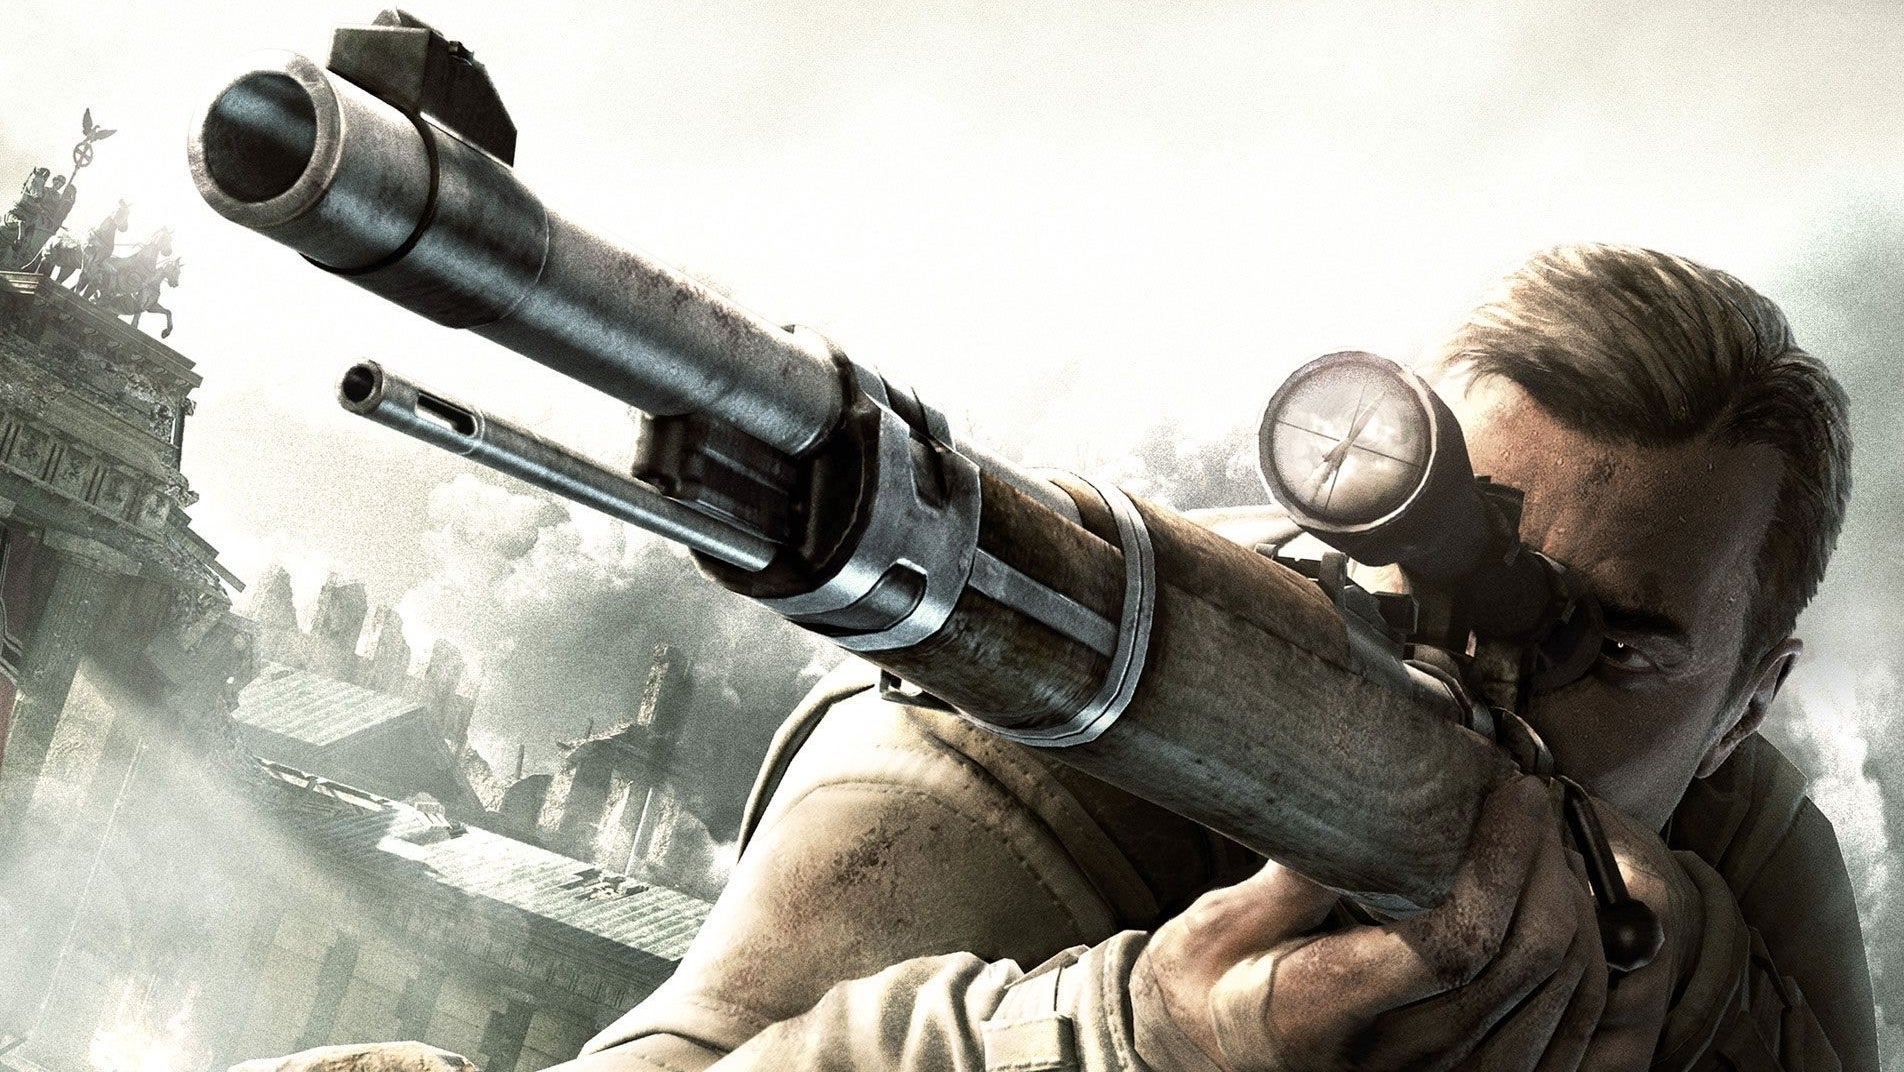 Immagine di Sniper Elite V2 Remastered - recensione